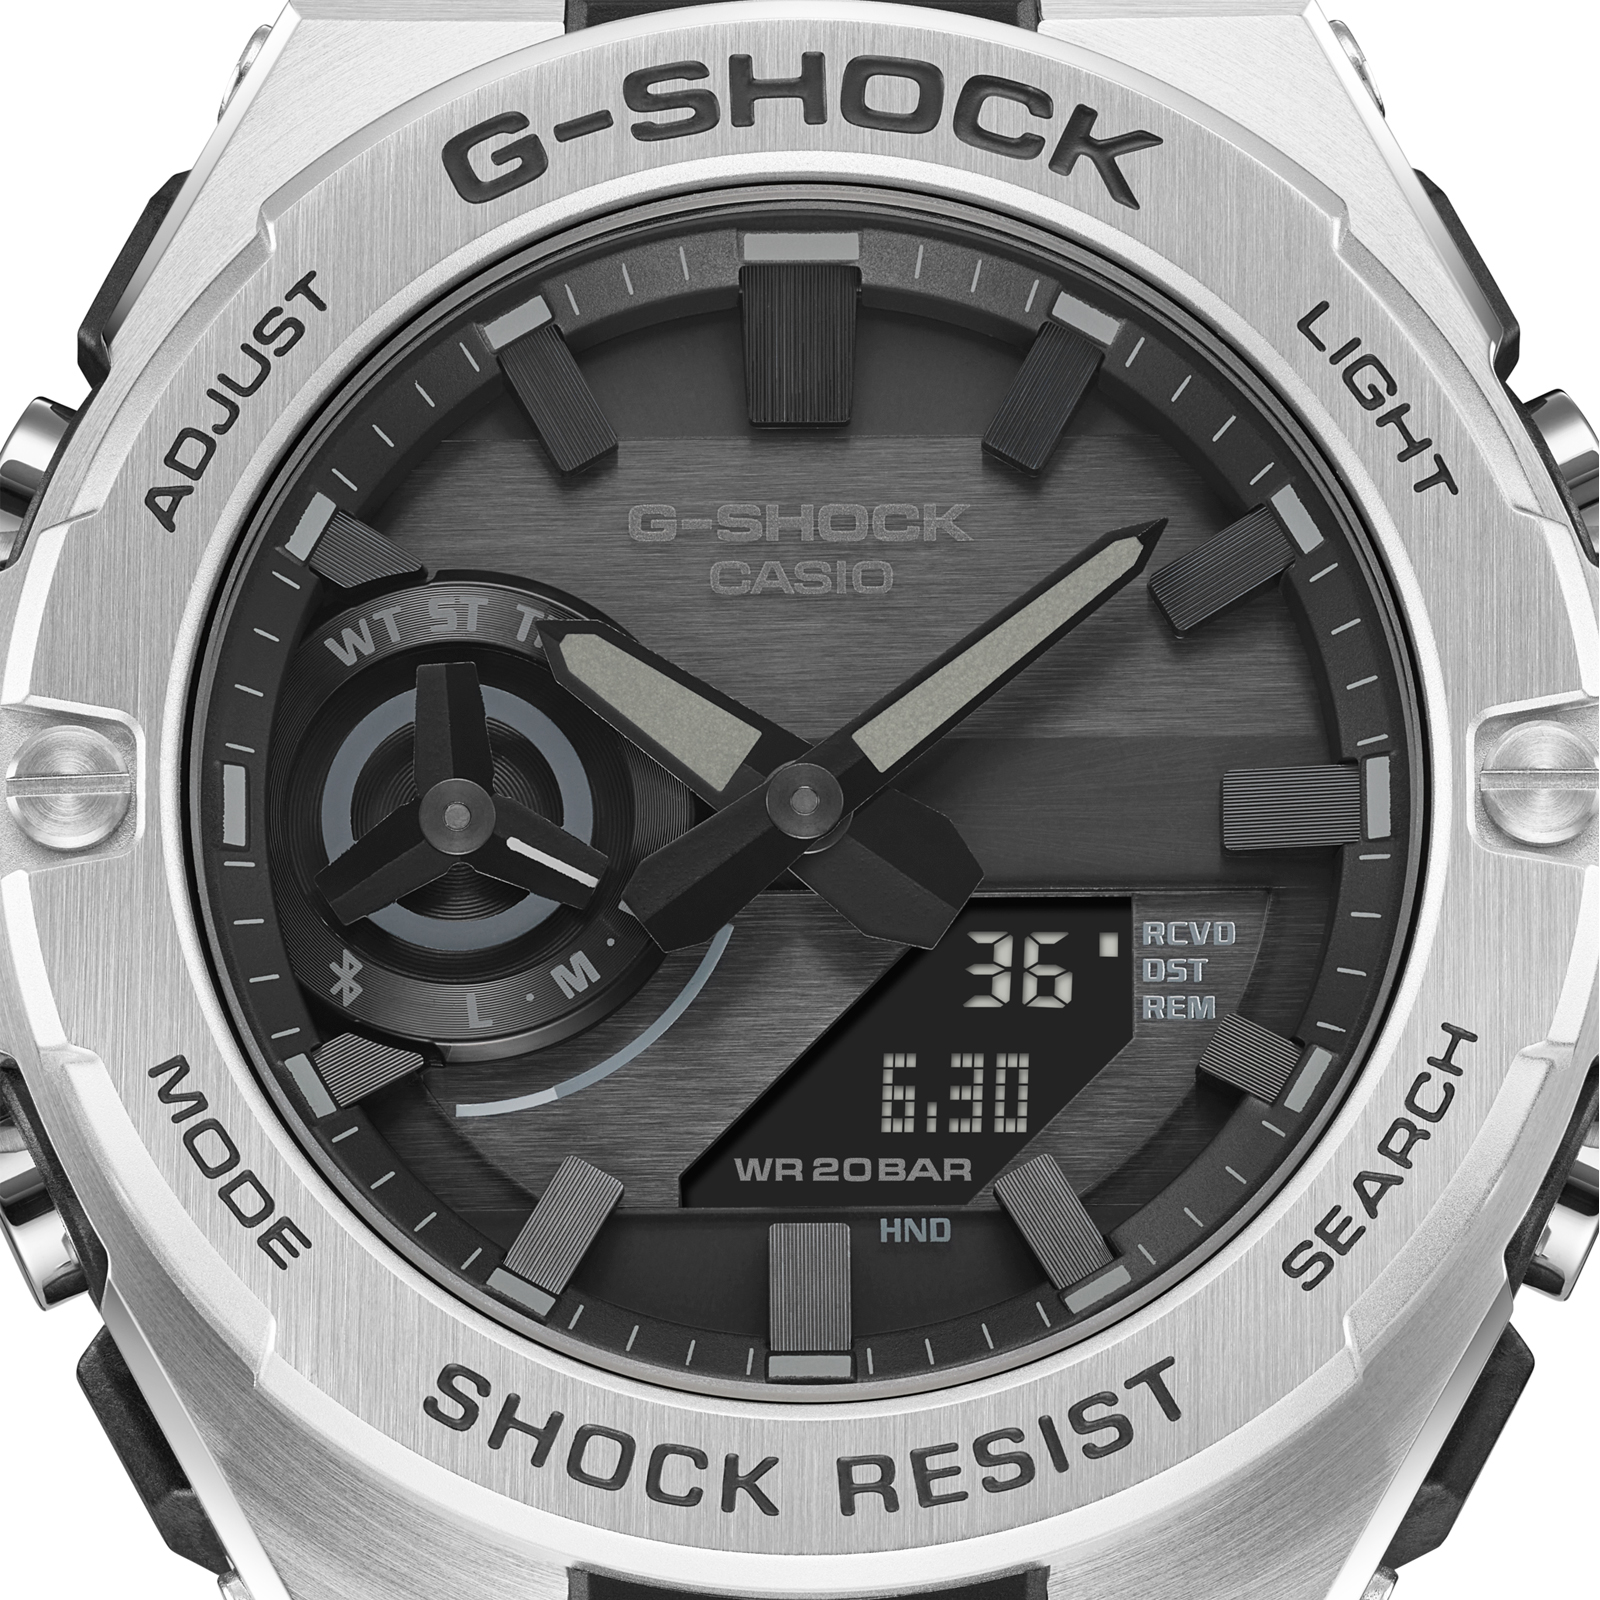 Reloj G-SHOCK GST-B500D-1A1DR Resina/Acero Hombre Plateado